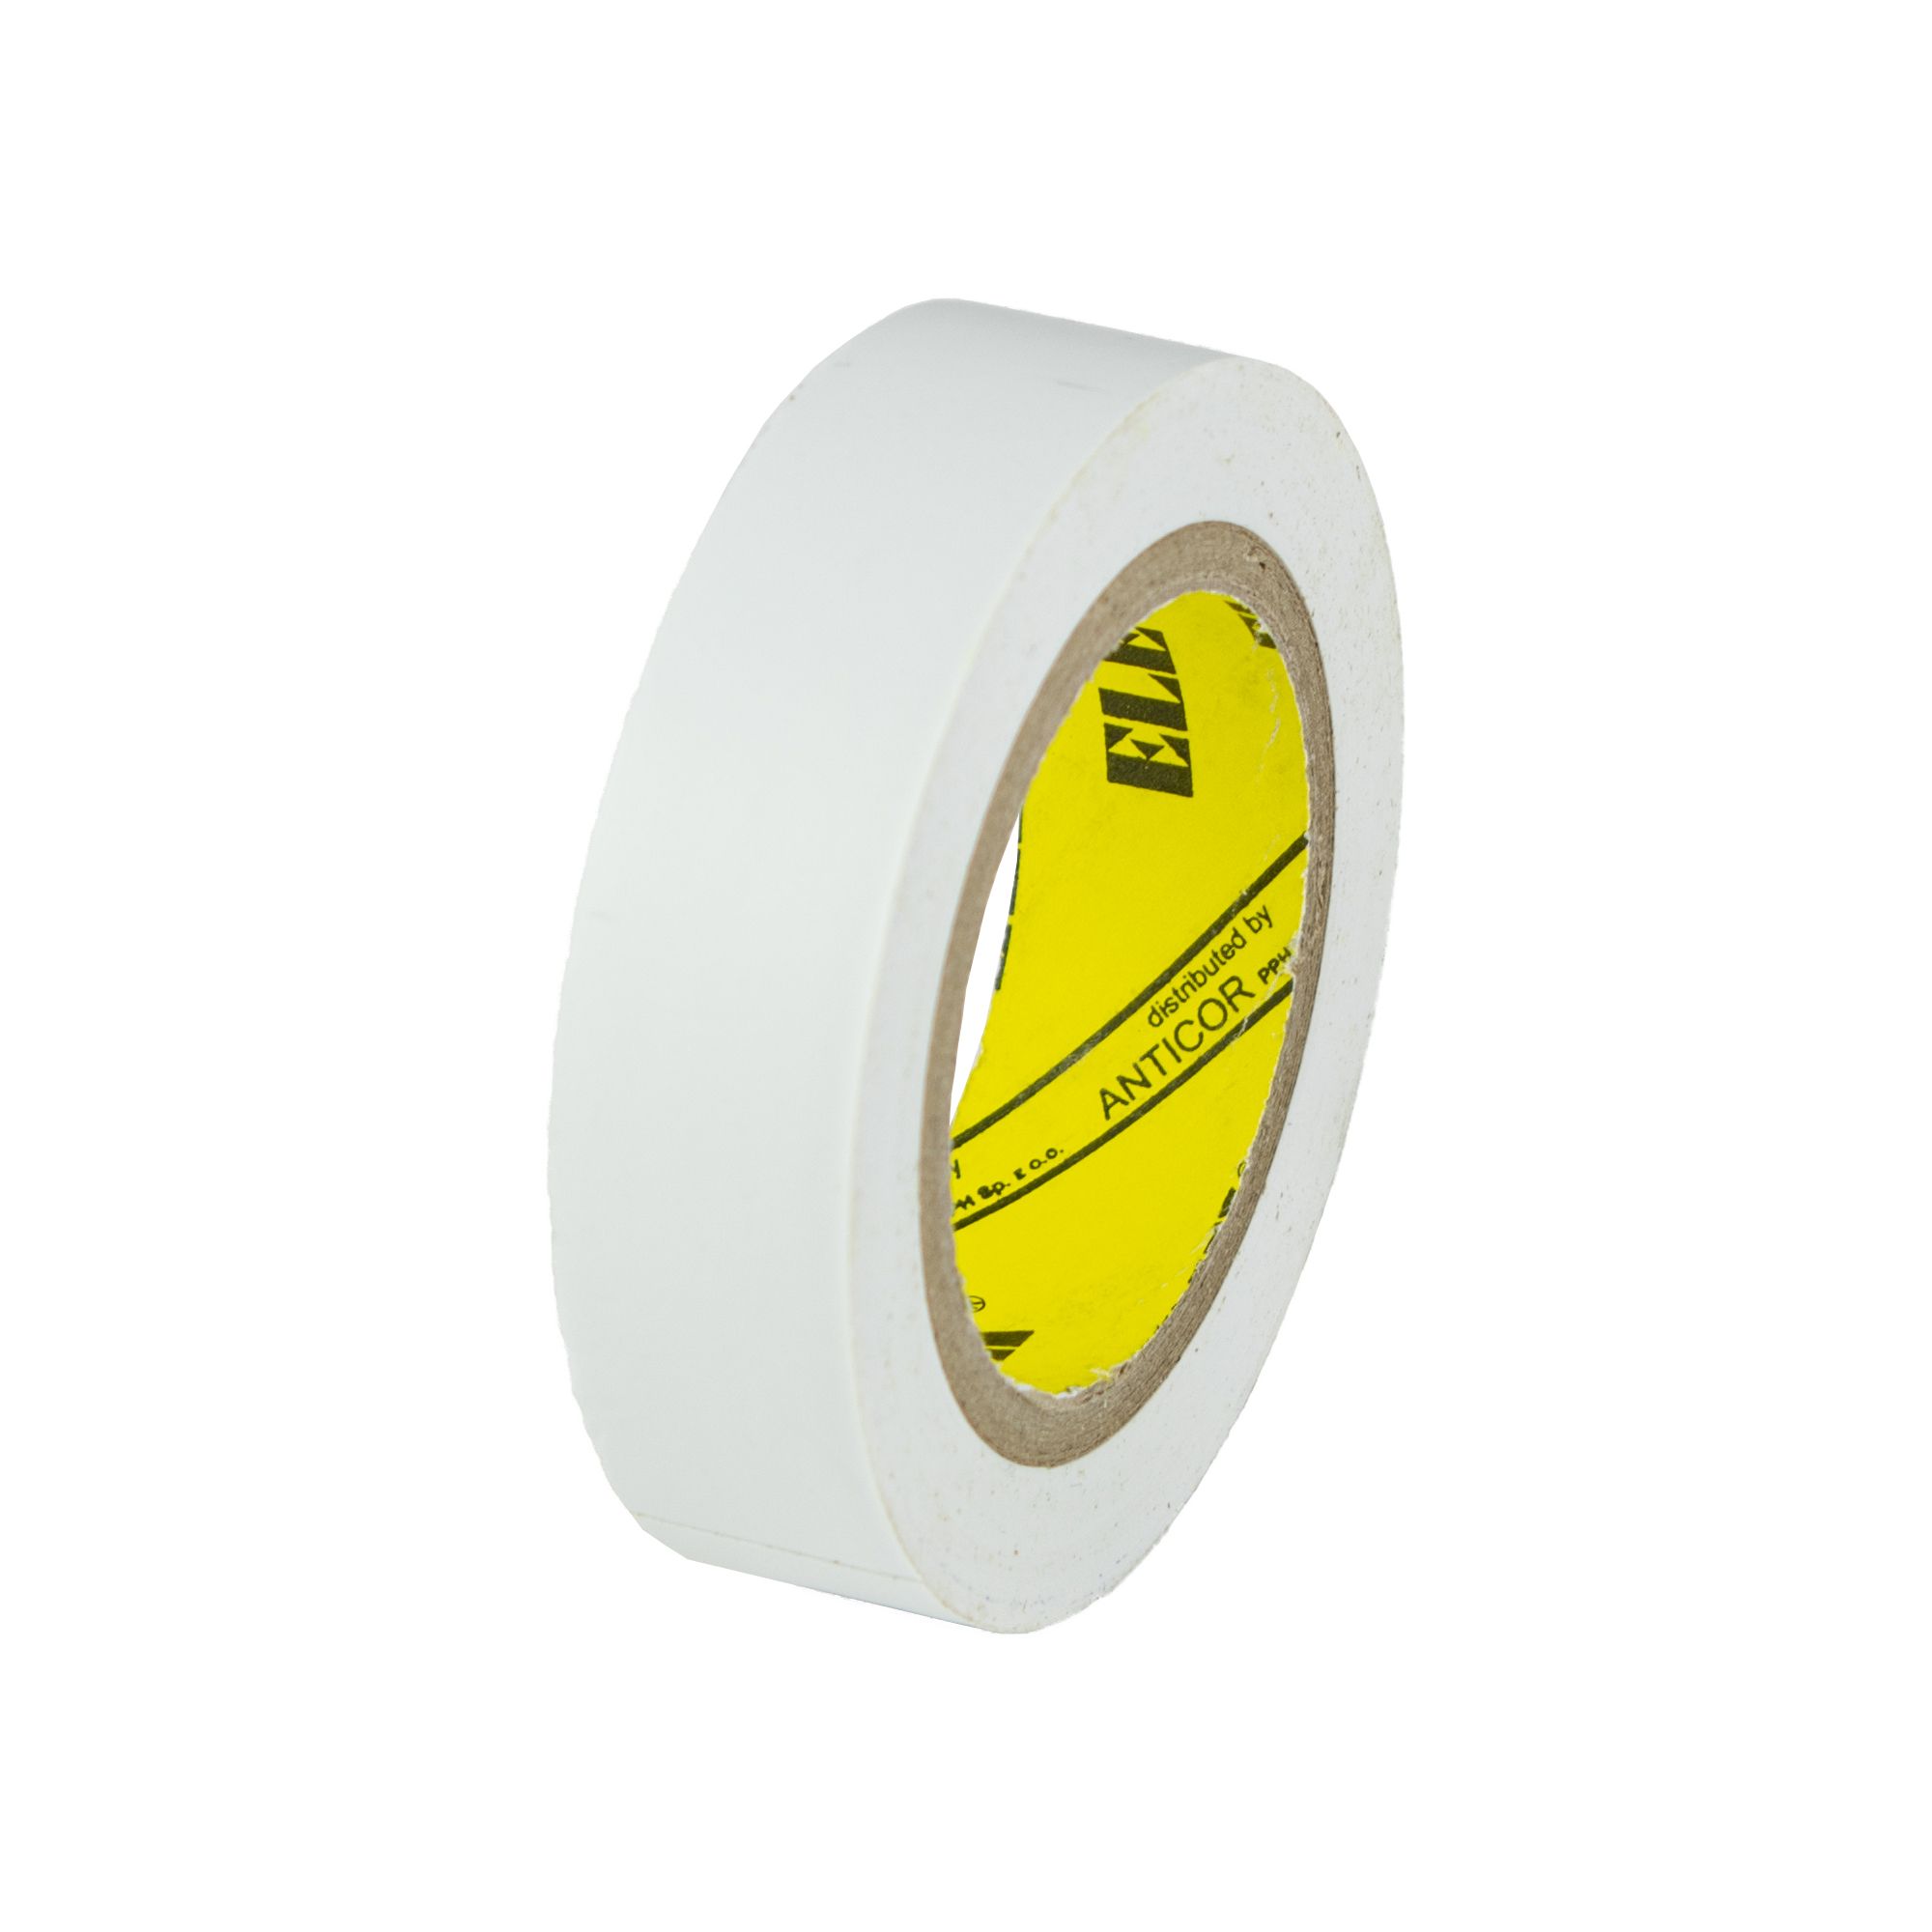 Izolační páska PVC 15mm / 10m, bílá 0.028000 Kg GIGA Sklad20 V9511 27